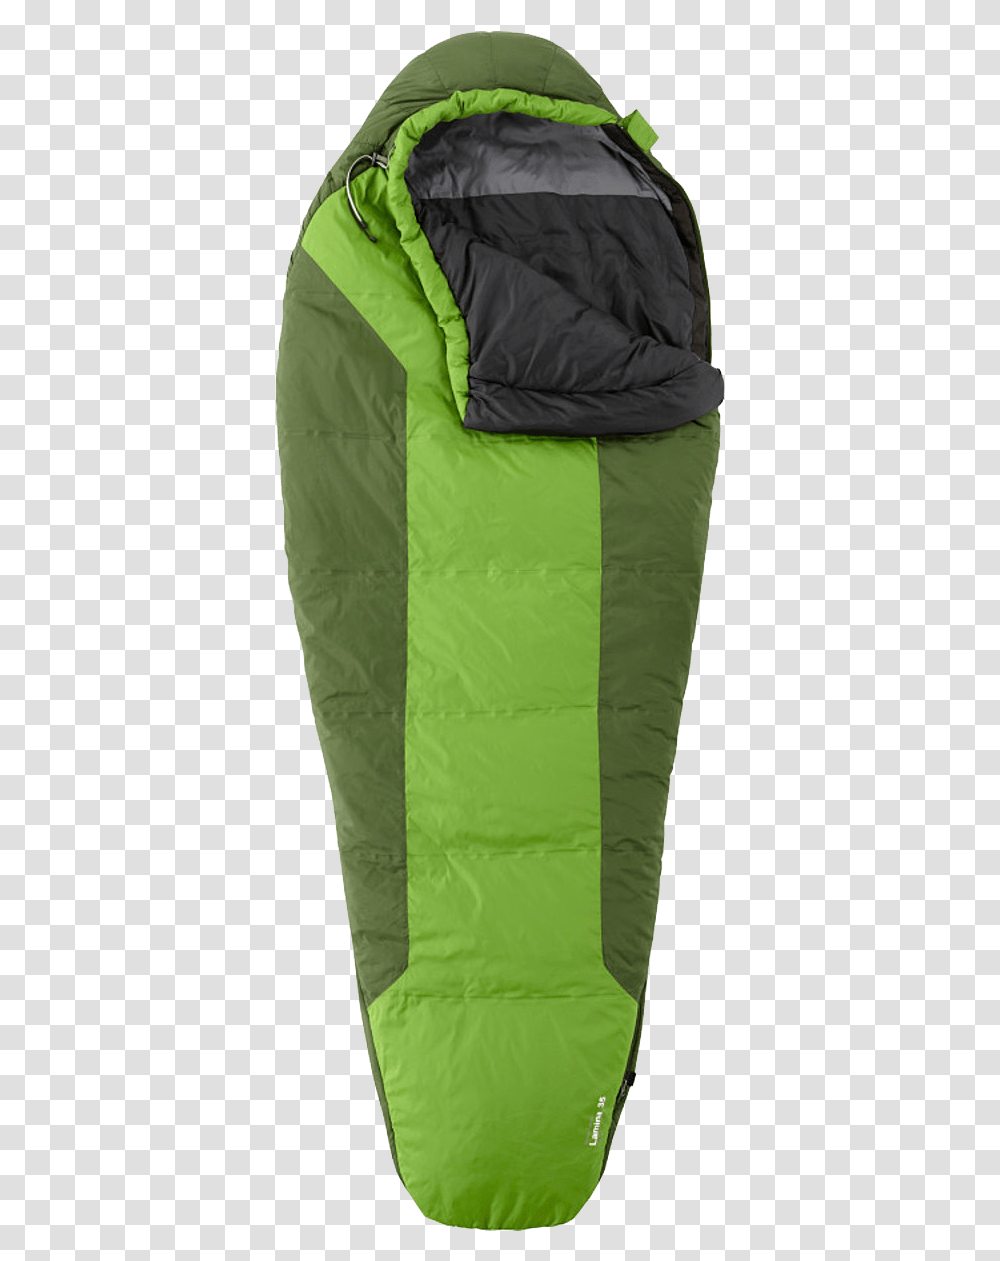 Sleeping Bag 35 Degree Mountain Hardwear Light Sleeping Bags, Shopping Bag, Plastic Bag, Tote Bag, Sack Transparent Png